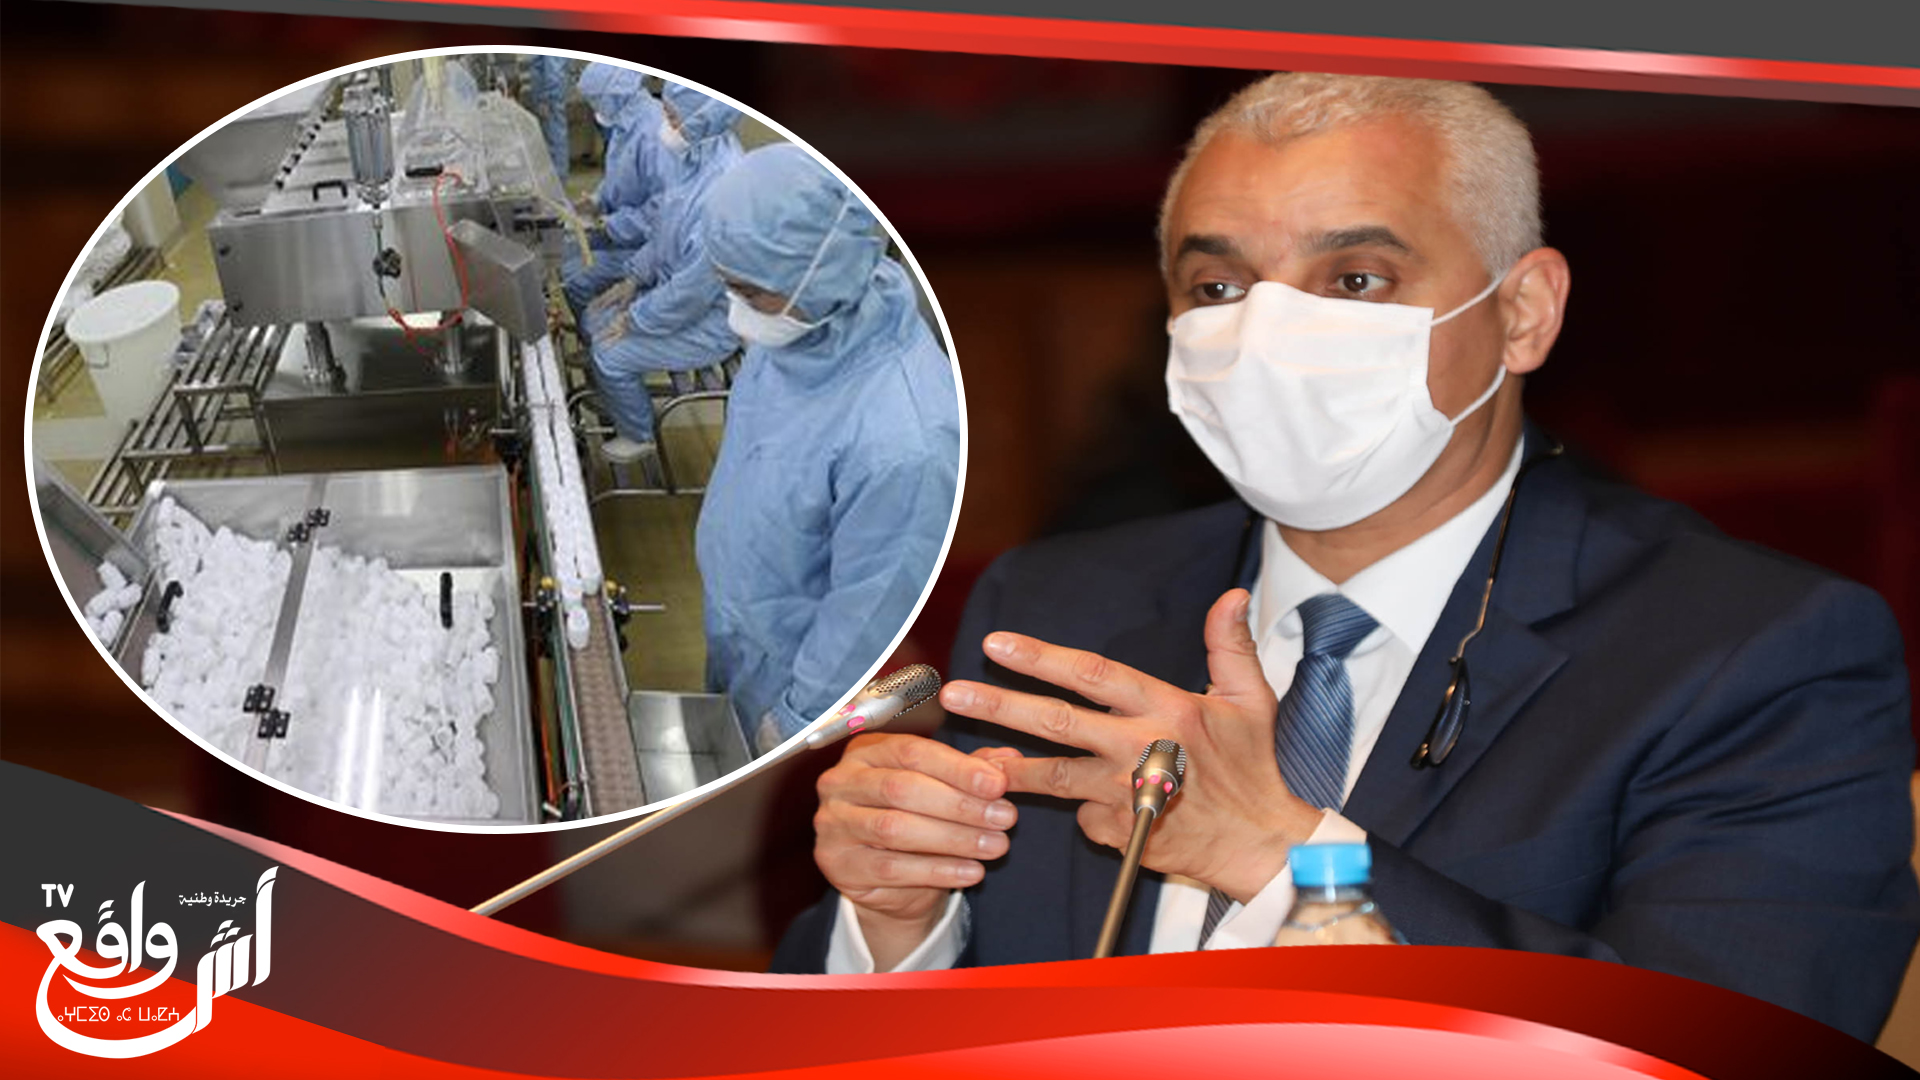 وزير الصحة: المغرب “كان محقا” في تمسكه بالكلوروكين كبروتوكول علاجي